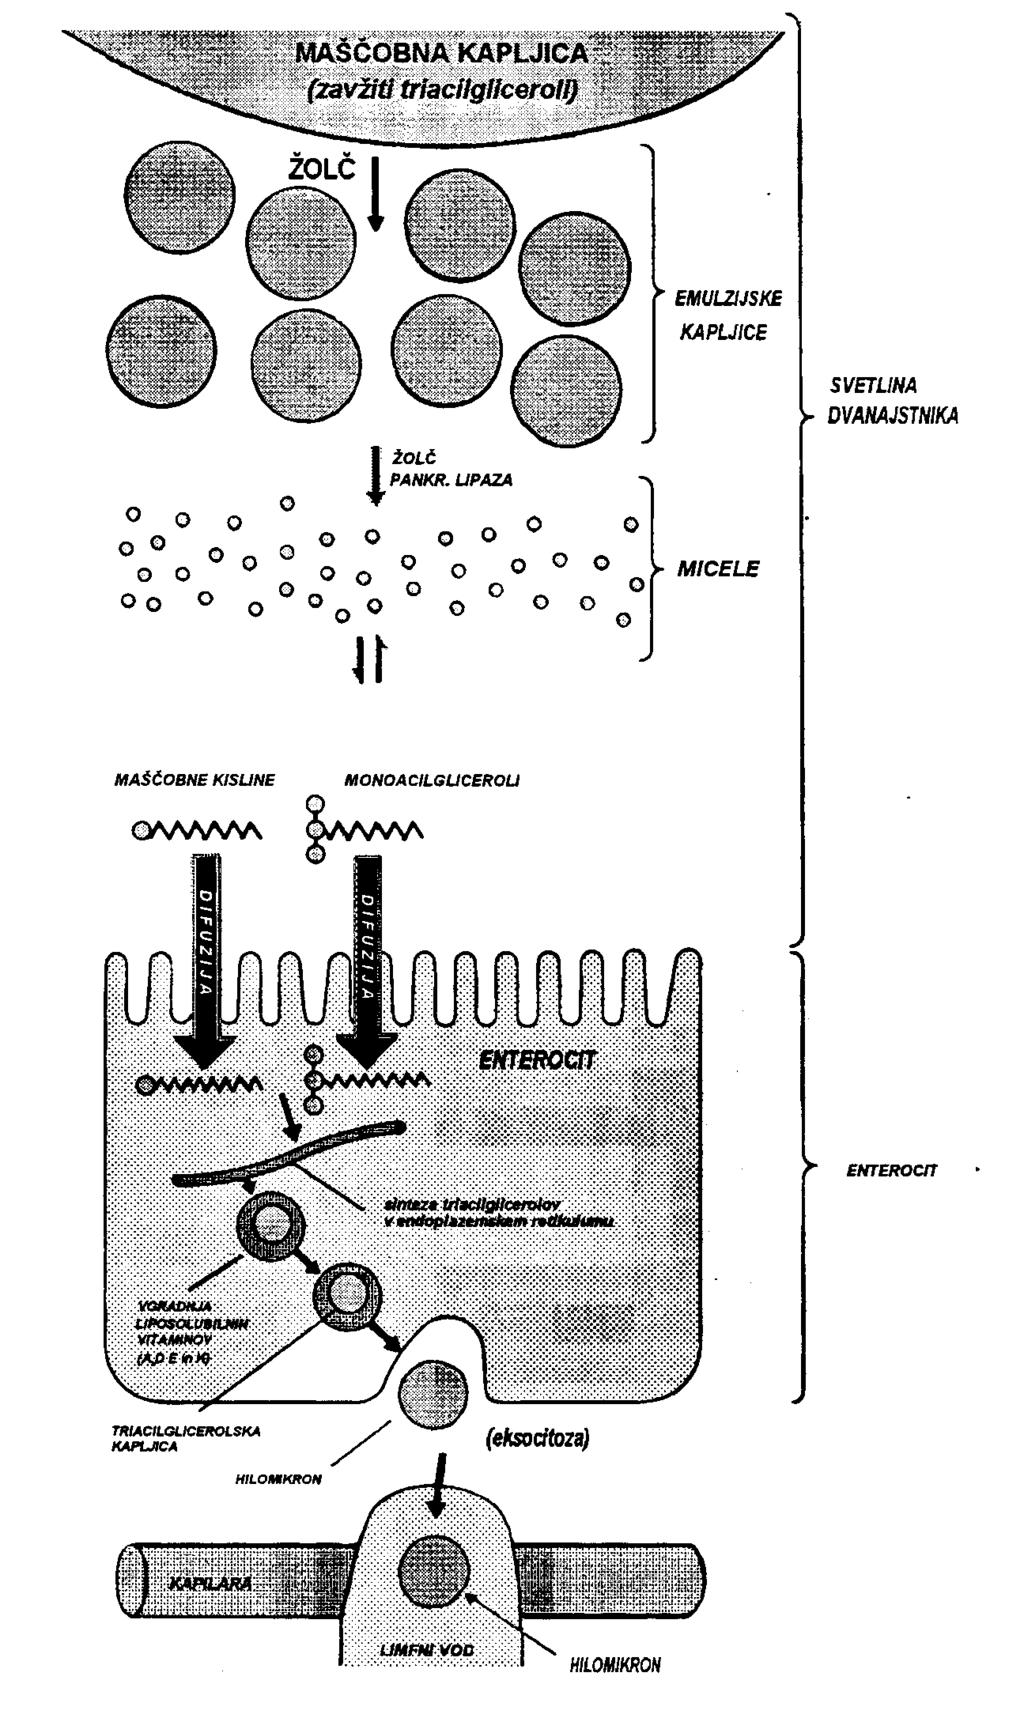 Skupni prikaz prebave maščob Hilomikroni se izločajo iz enterocitov v obliki sekretornih mešičkov, ki se stopijo s celično membrano in tako izločijo